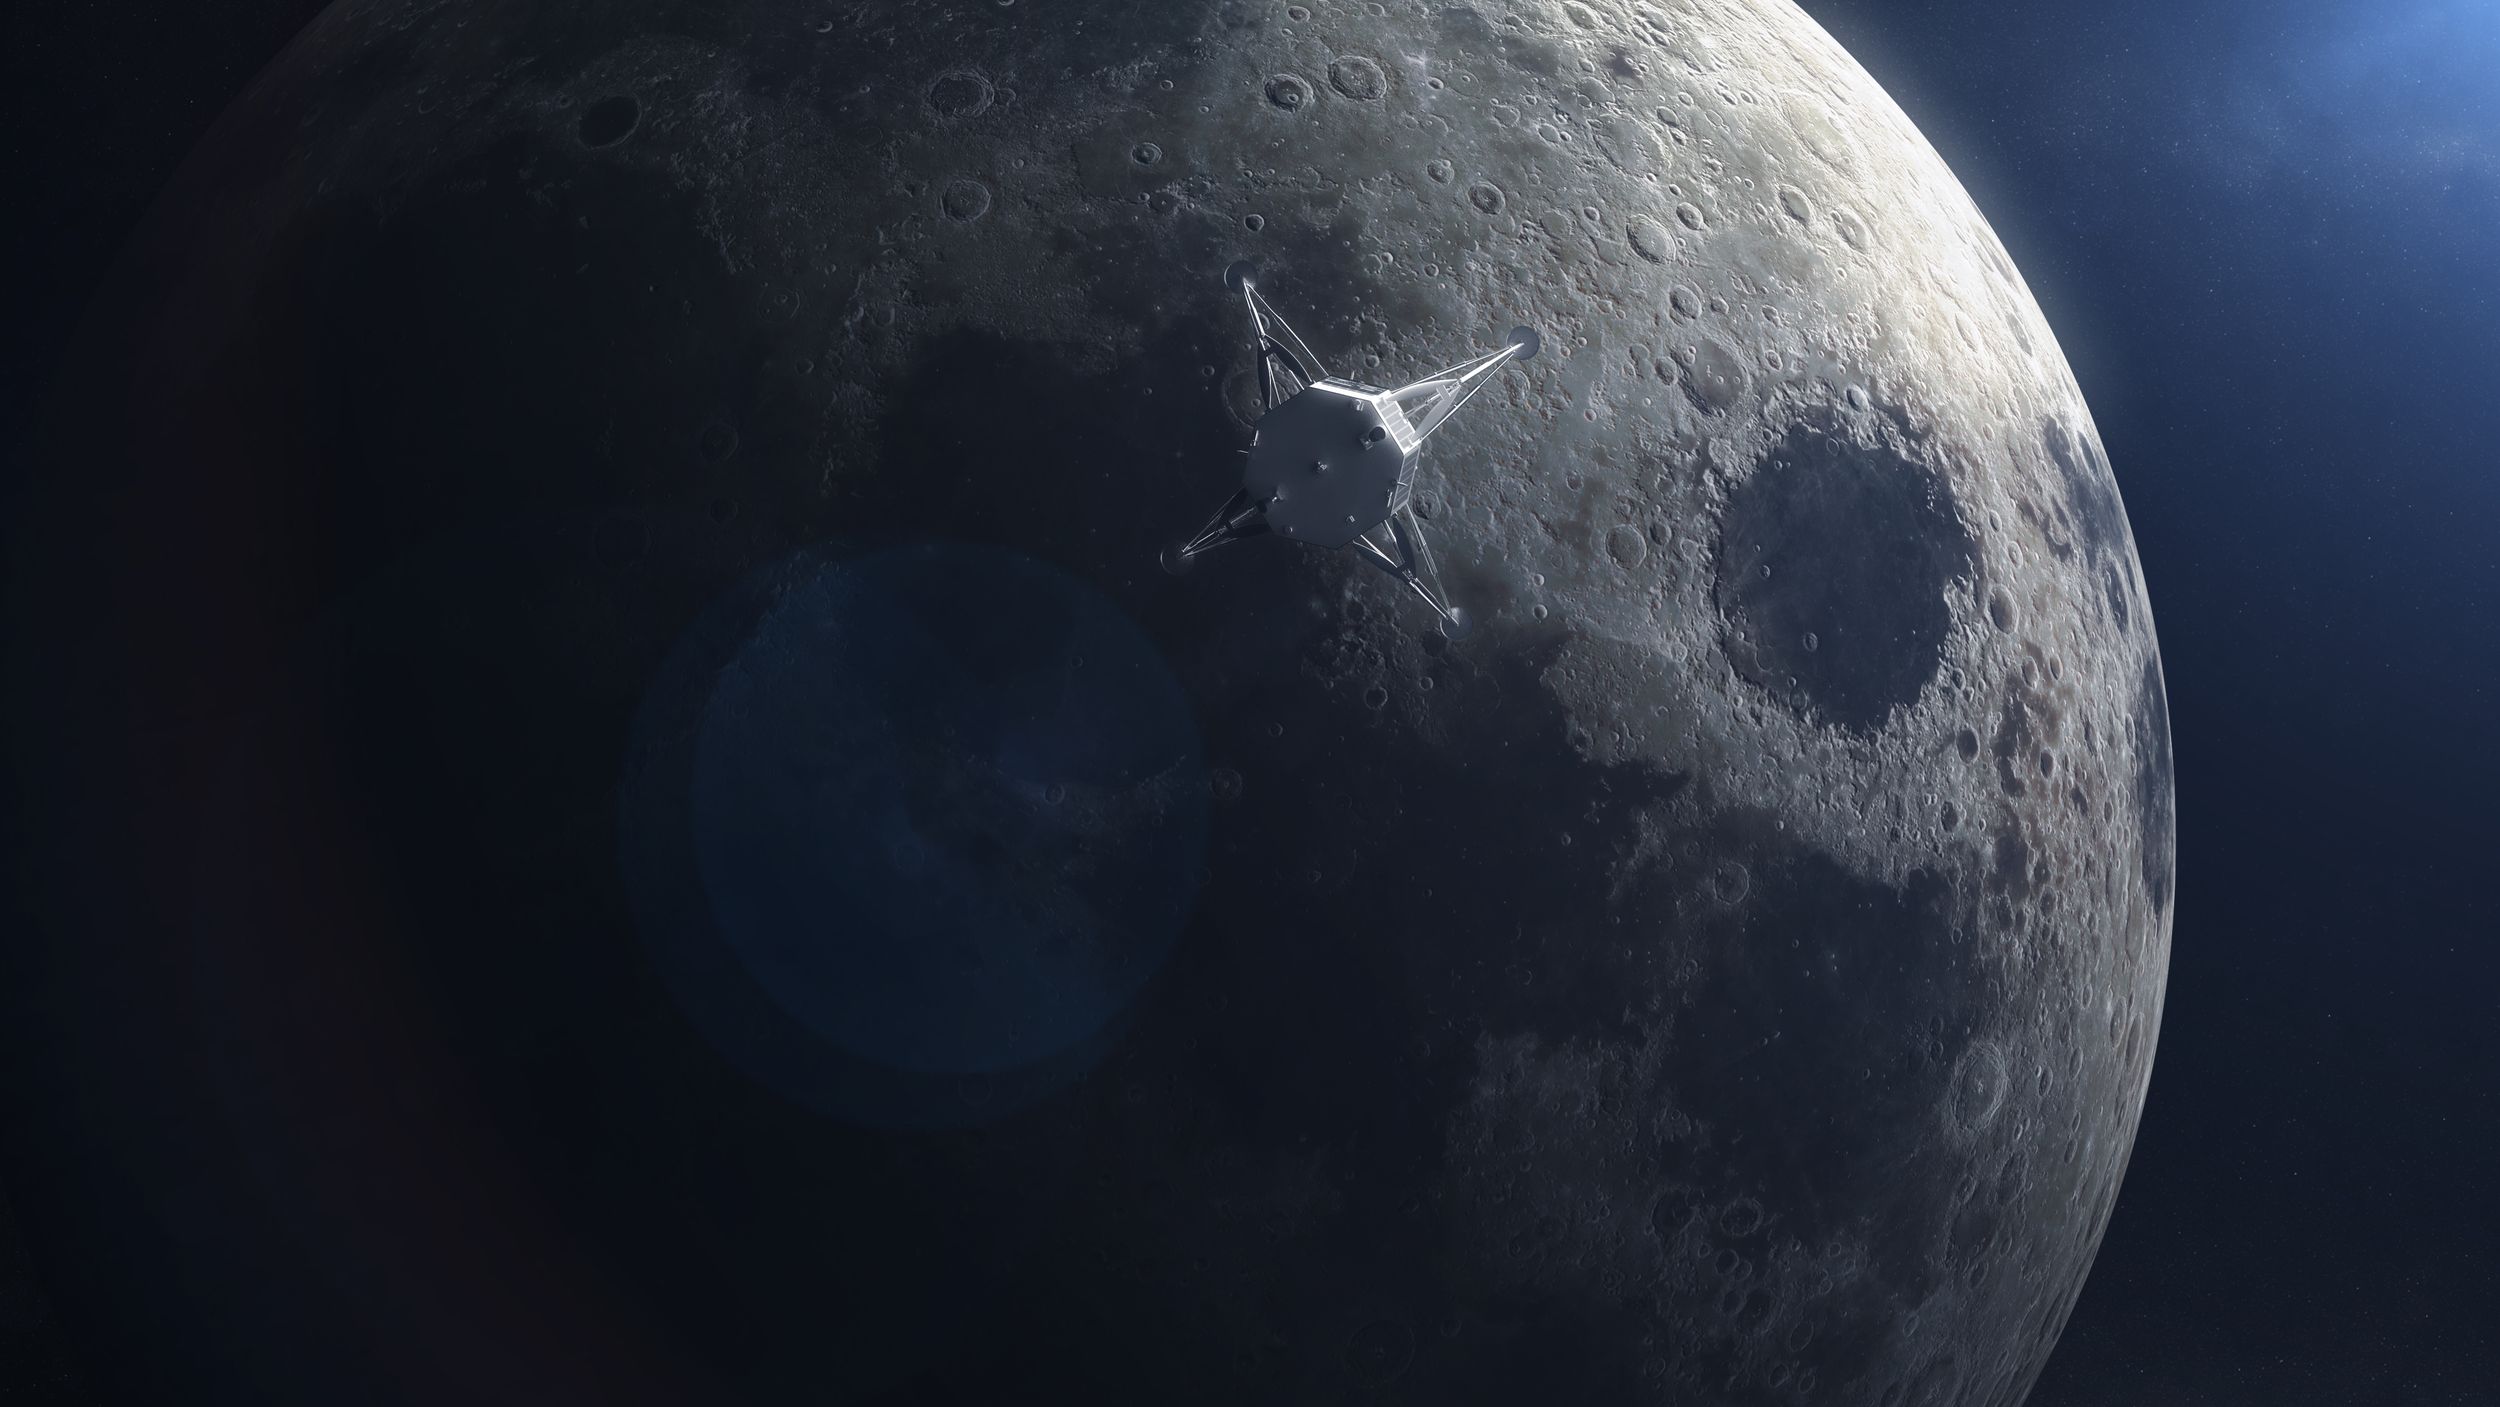 HAKUTO-R ispace Super Titanium lunar lander